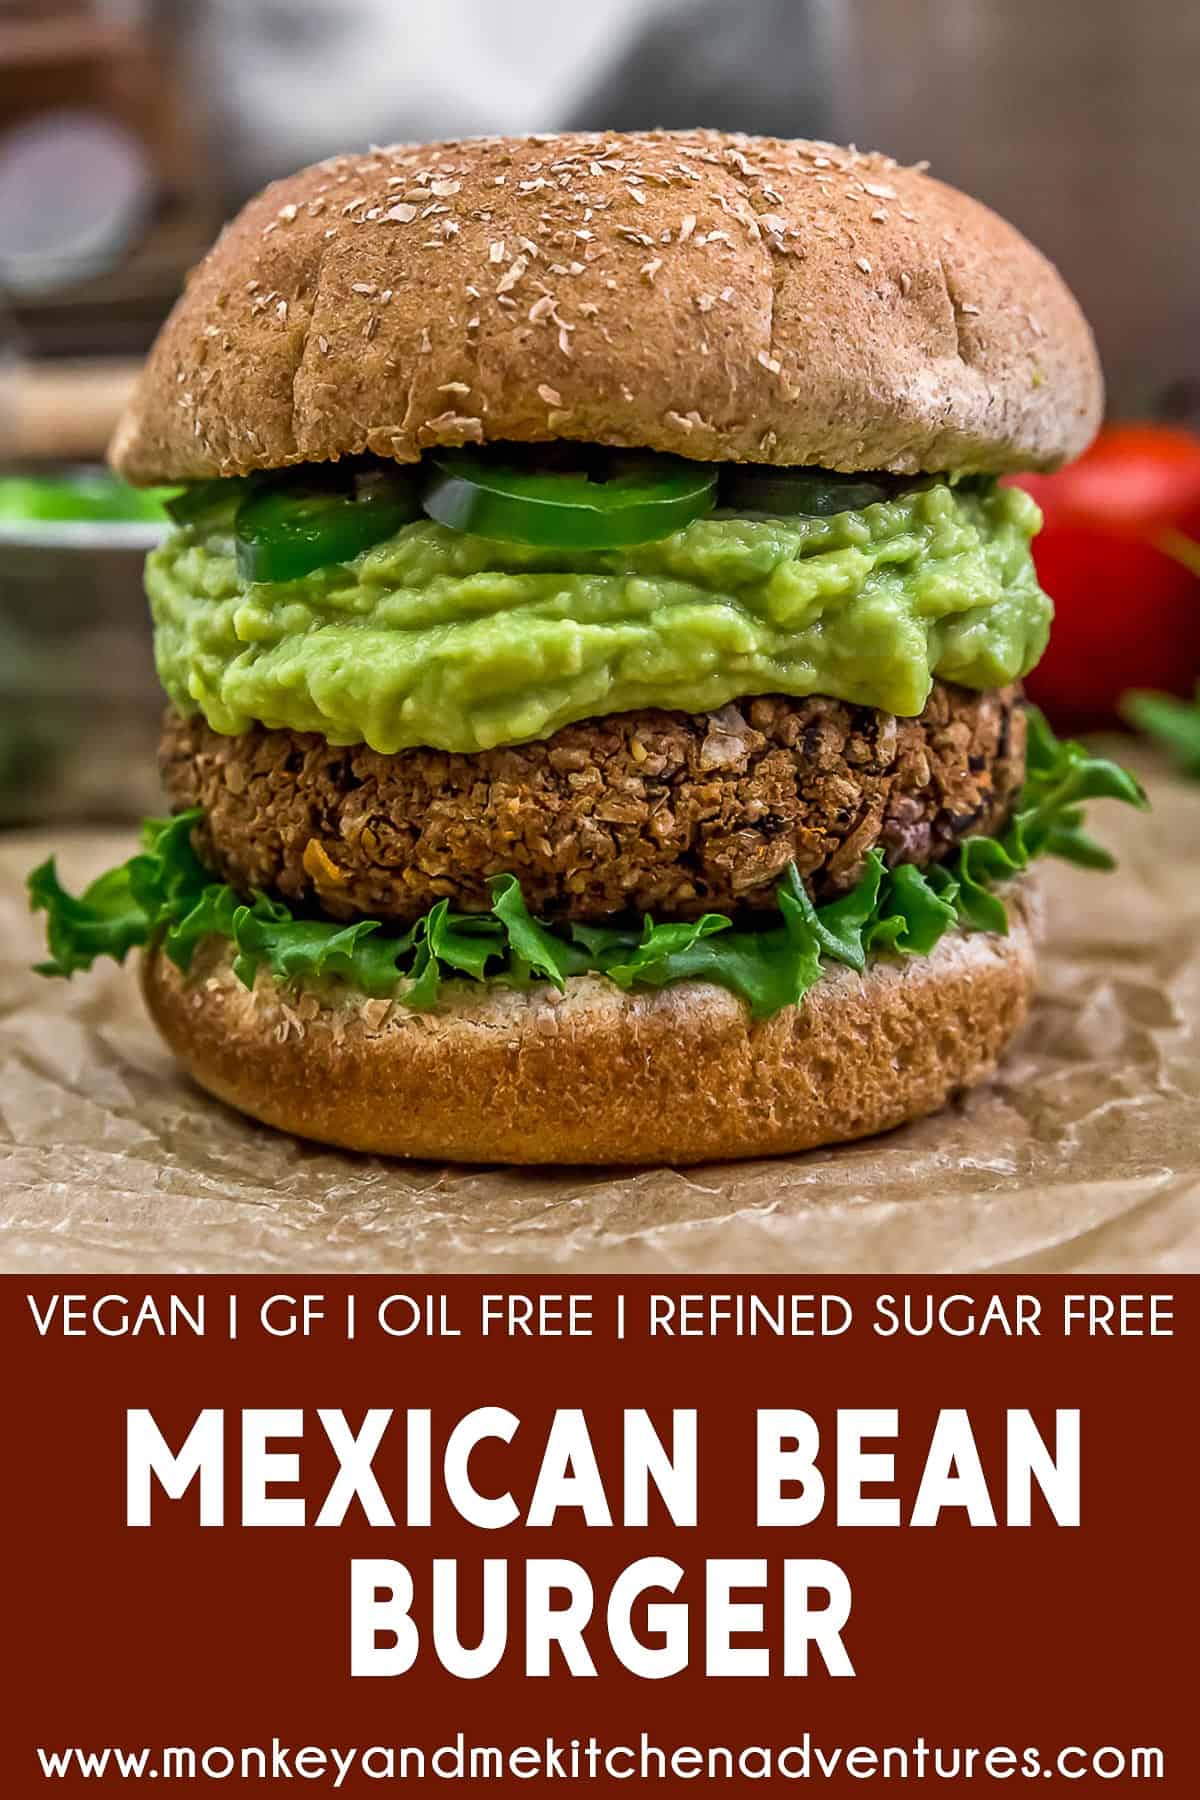 Mexican Bean Burger with text description